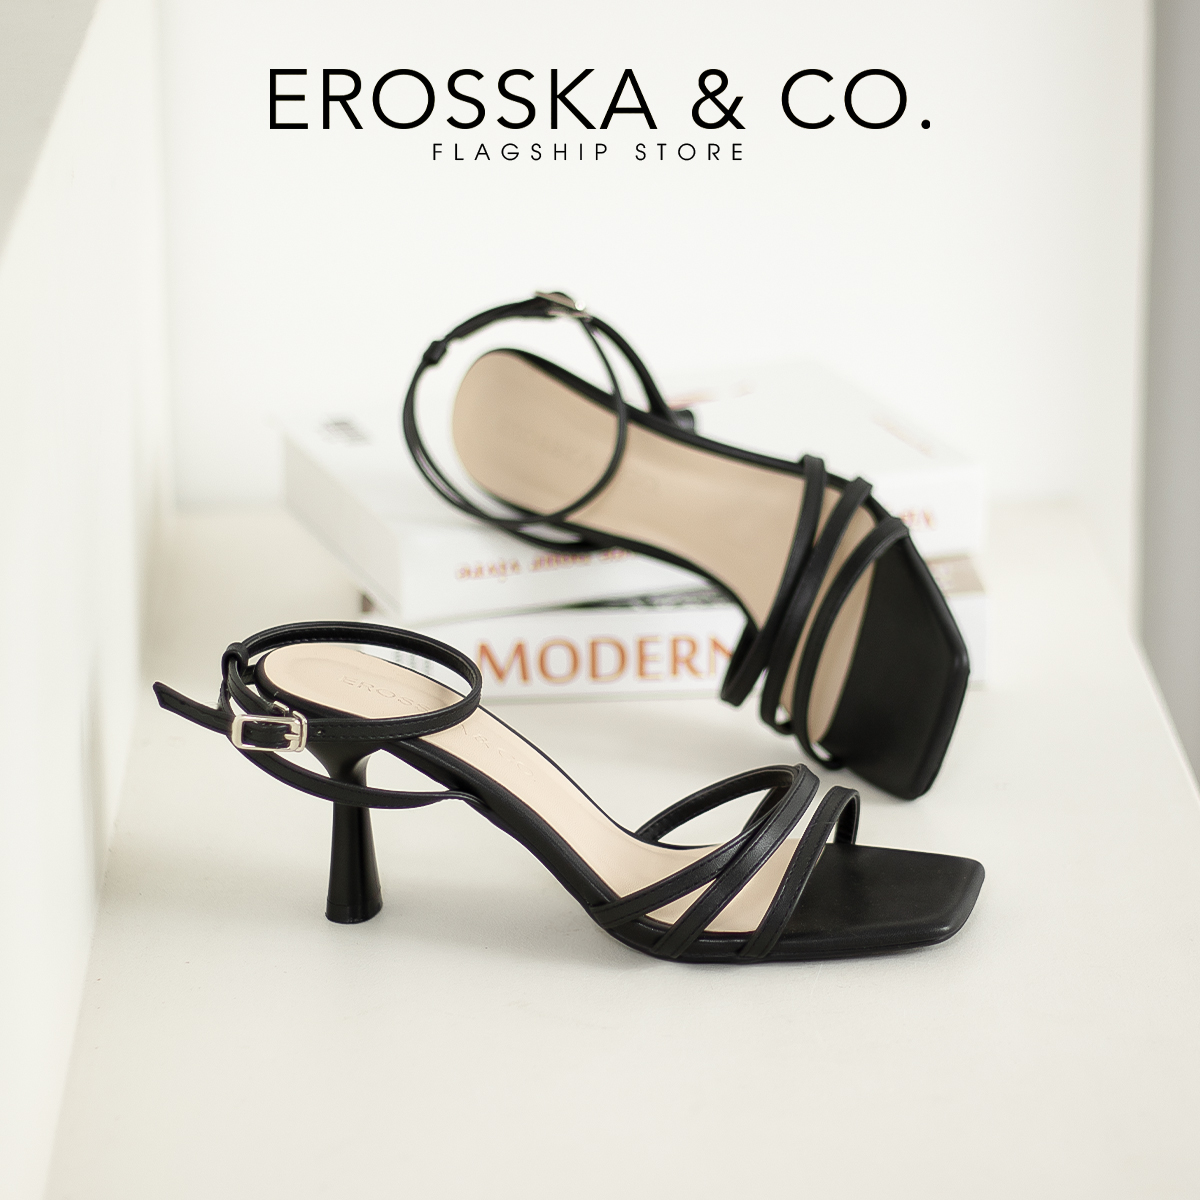 Erosska - Giày cao gót nhọn mũi hở phối dây quai mảnh cao 7cm - EB052